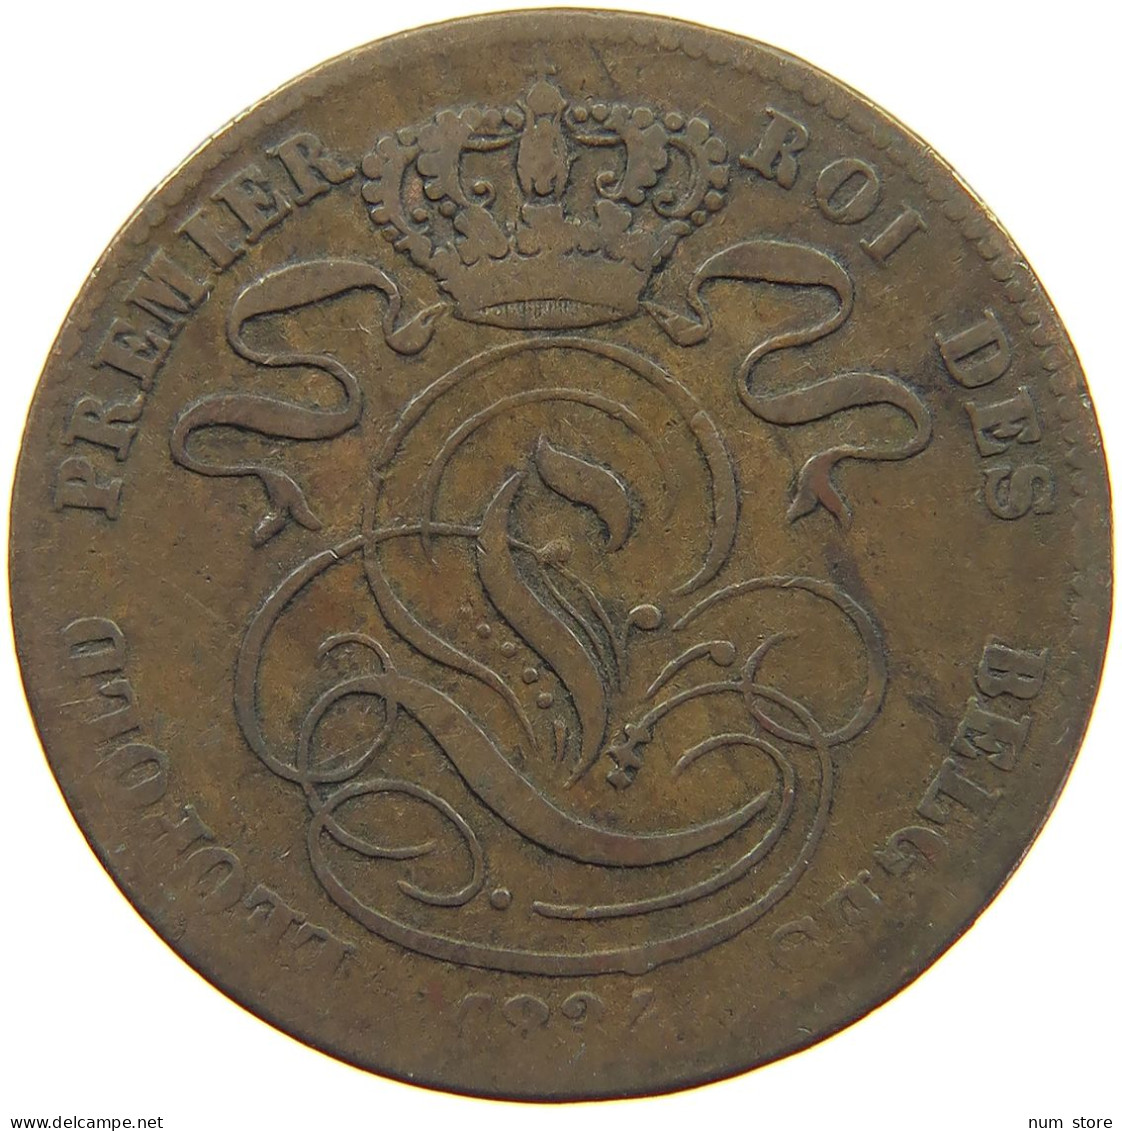 BELGIUM 5 CENTIMES 1834 Leopold I. (1831-1865) #c052 0455 - 5 Centimes